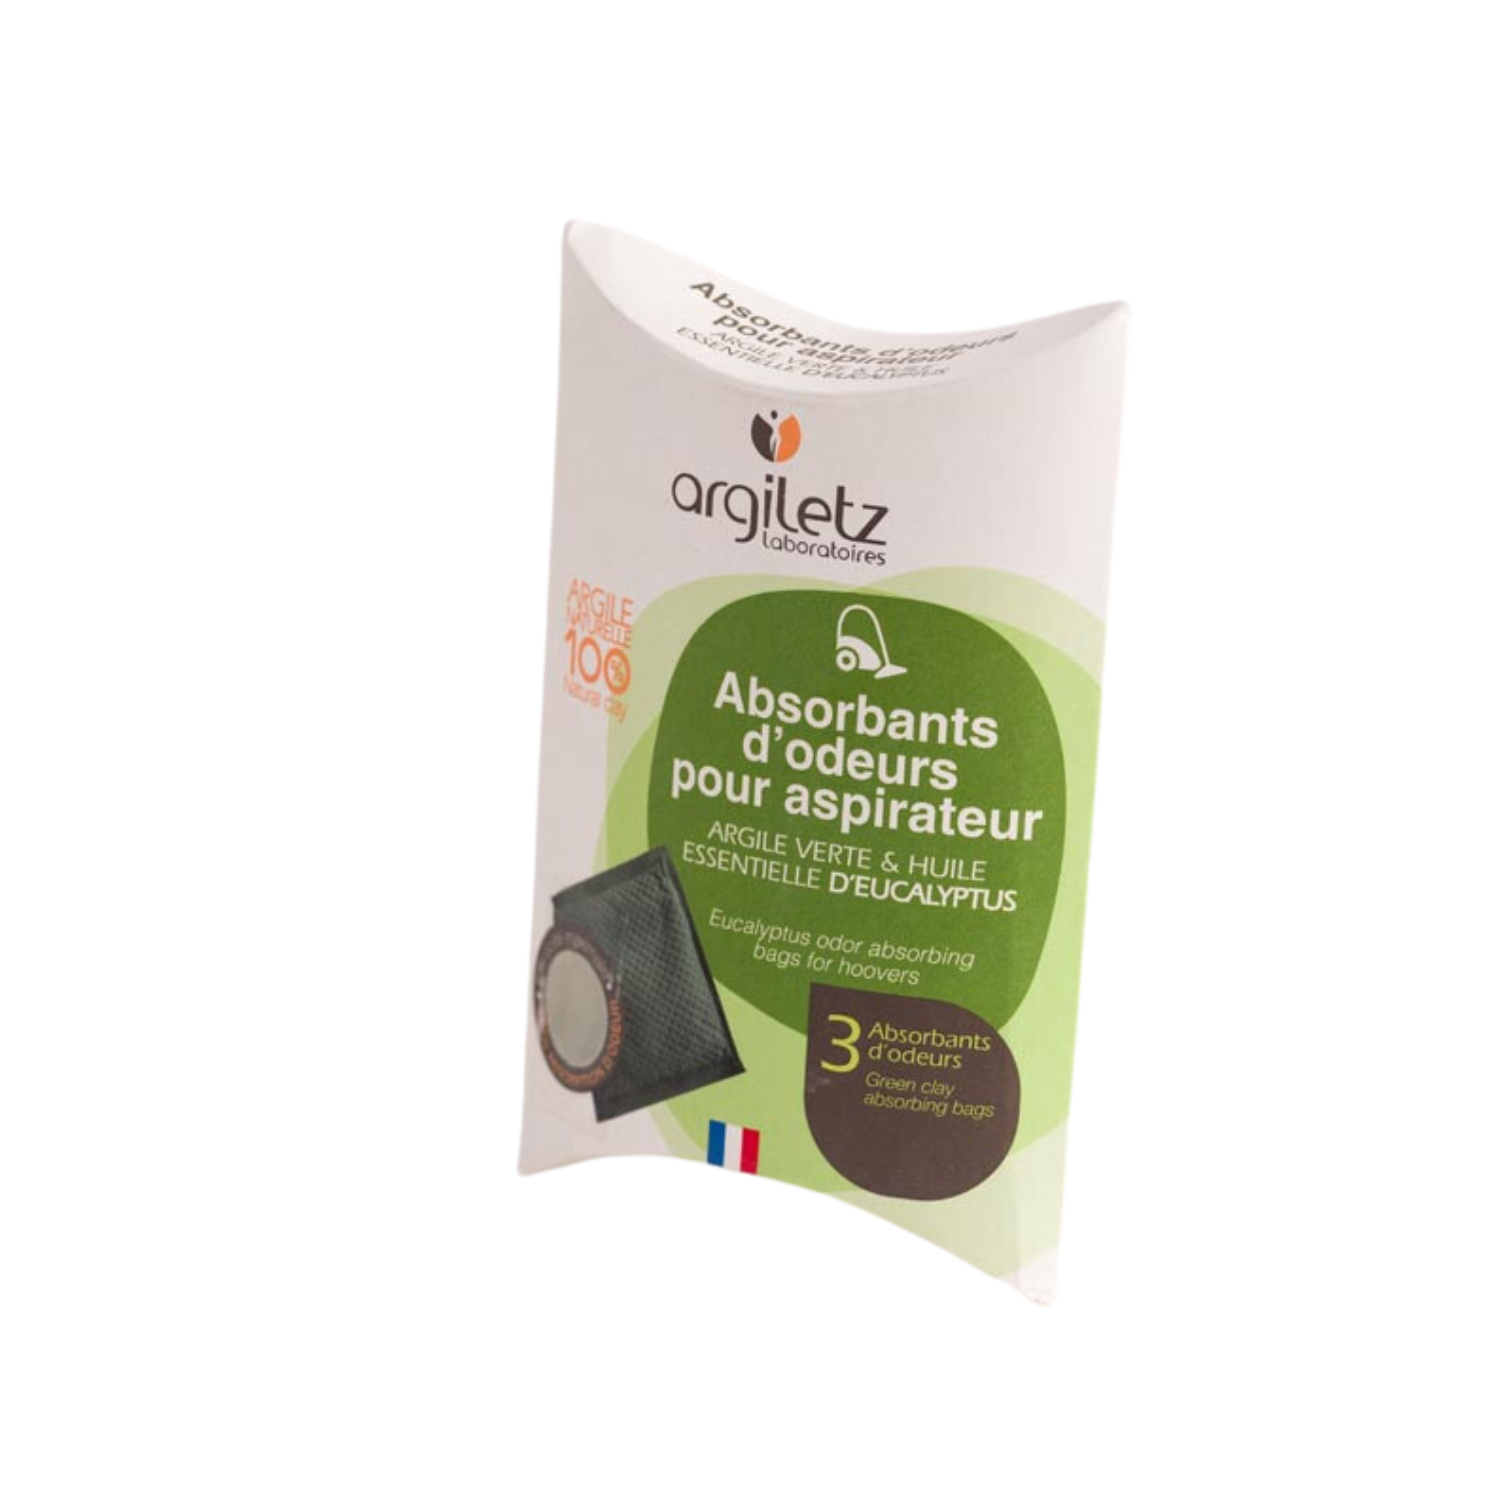 Odour-absorbing bags - Green Clay + Eucalyptus